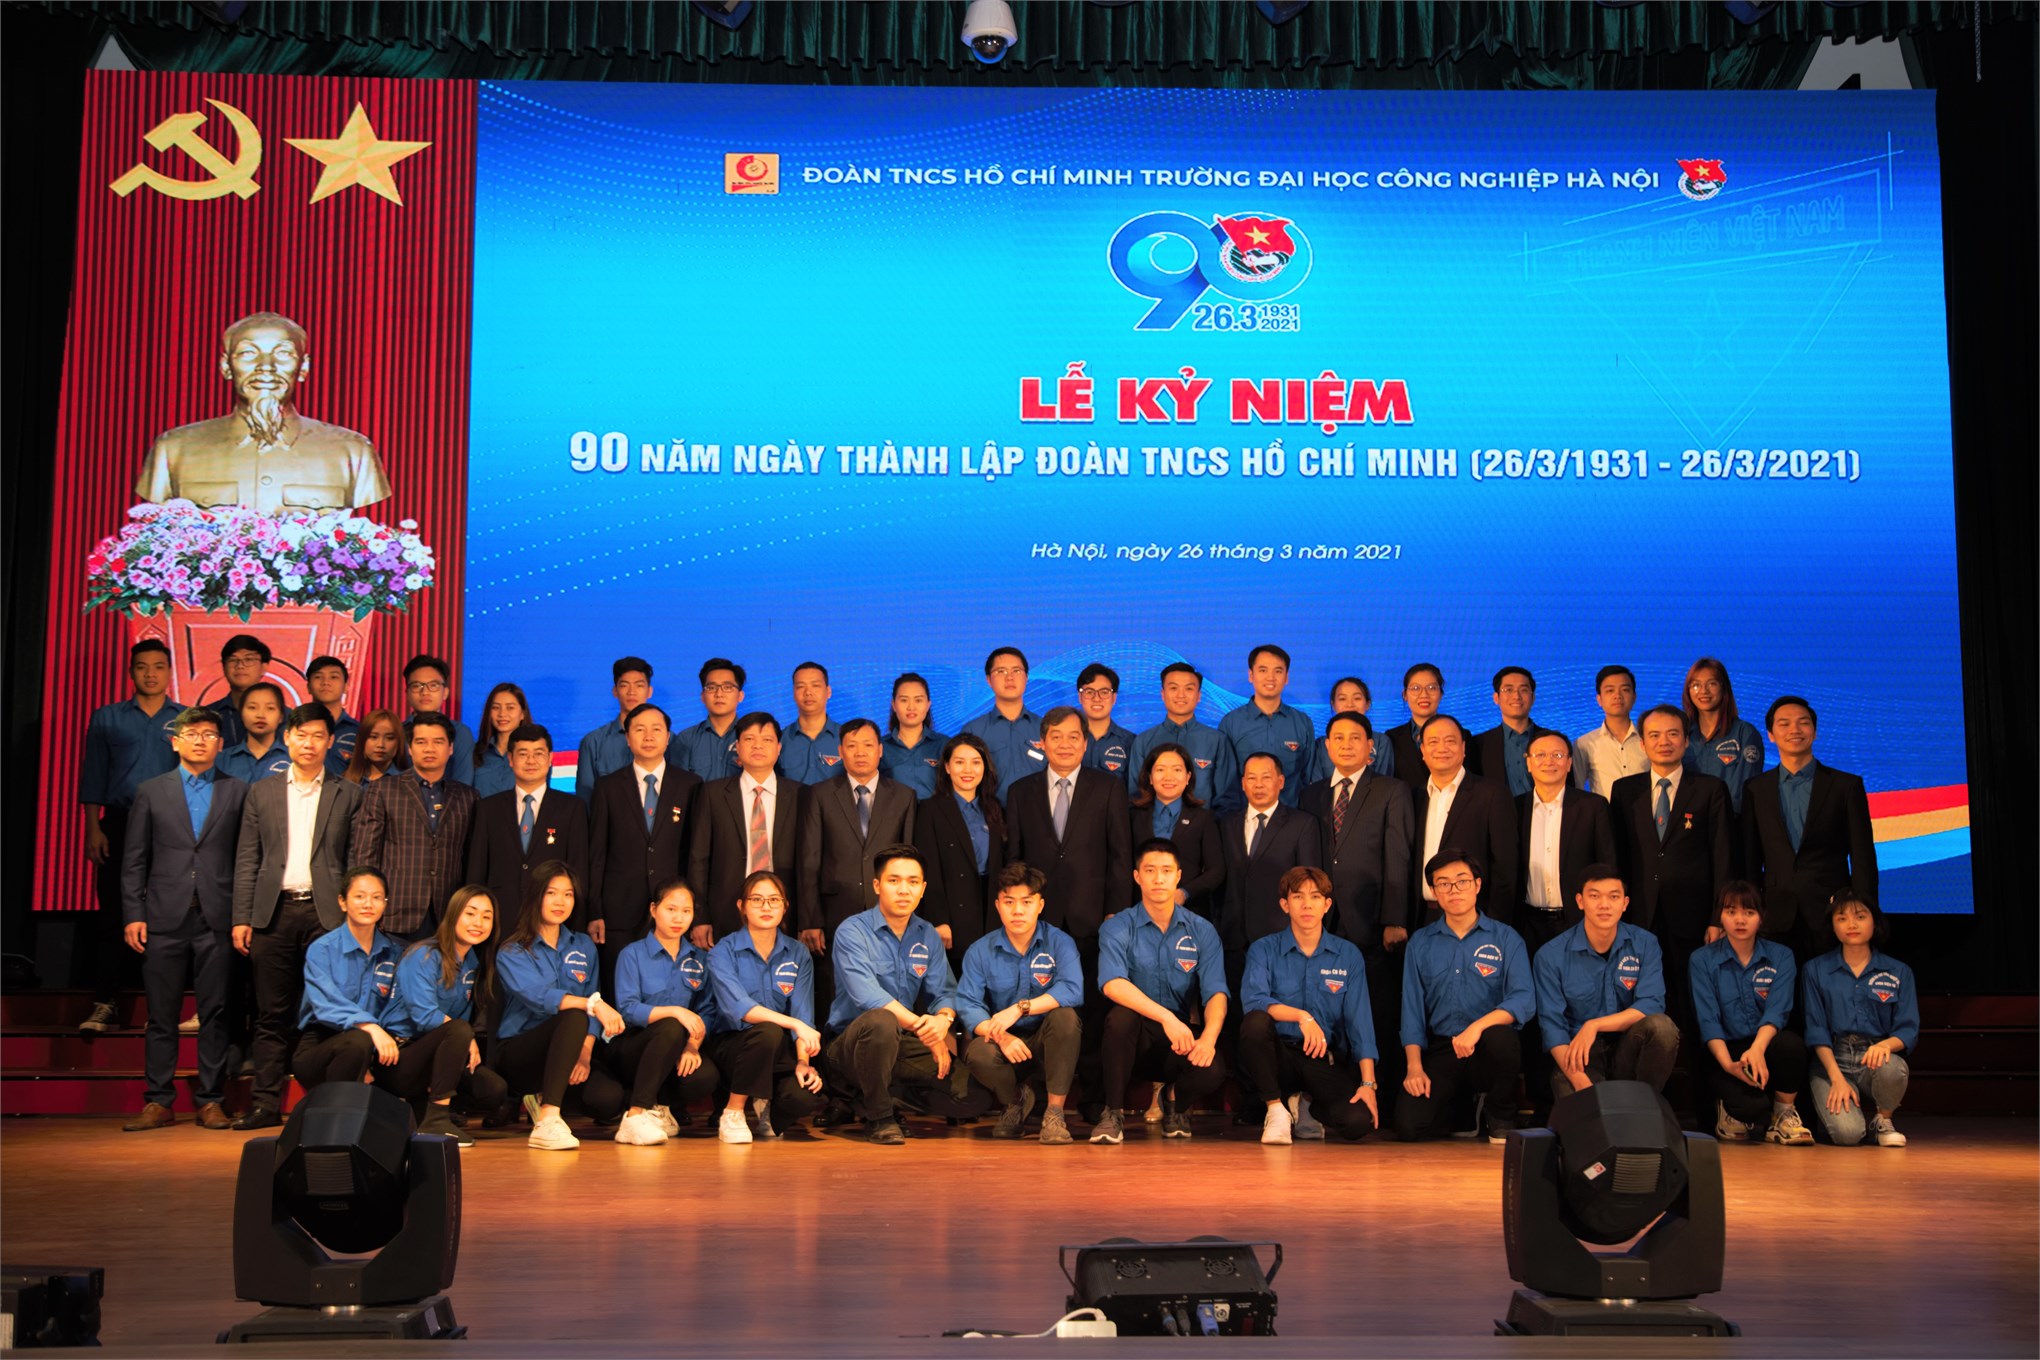 Đoàn Trường ĐHCNHN tổ chức trọng thể Lễ kỷ niệm 90 năm Ngày thành lập Đoàn TNCS Hồ Chí Minh (26/3/1931 - 26/3/2021)